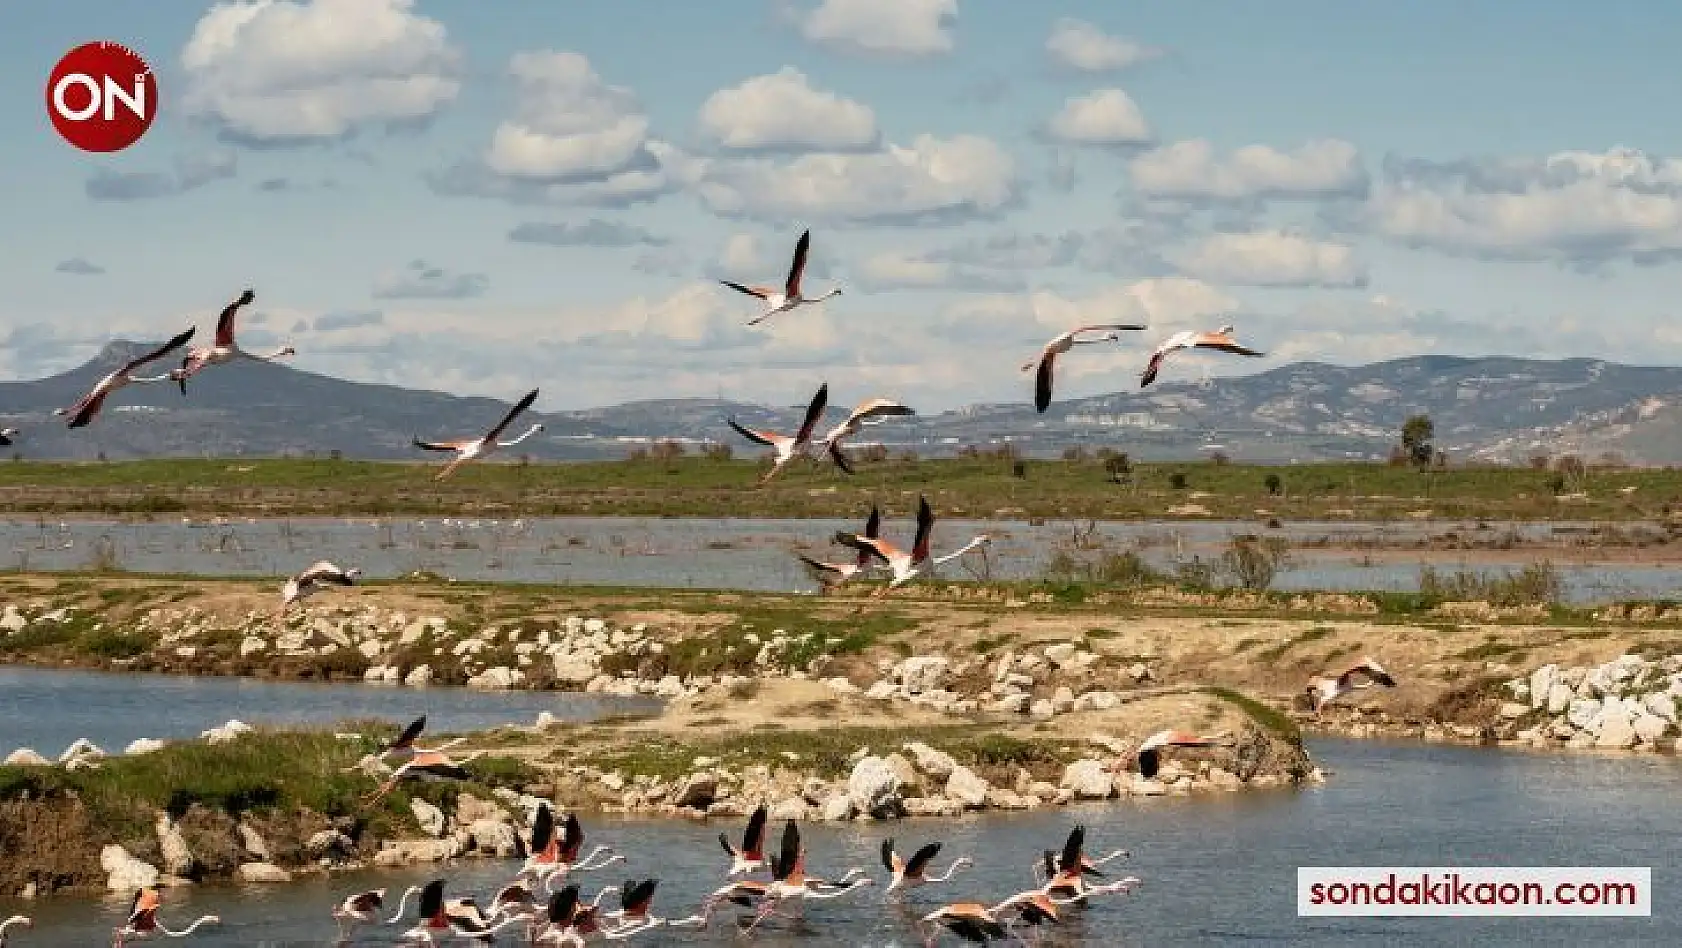 İzmir'in Gediz Deltasında Kuş Göçü İzleme Programı başladı